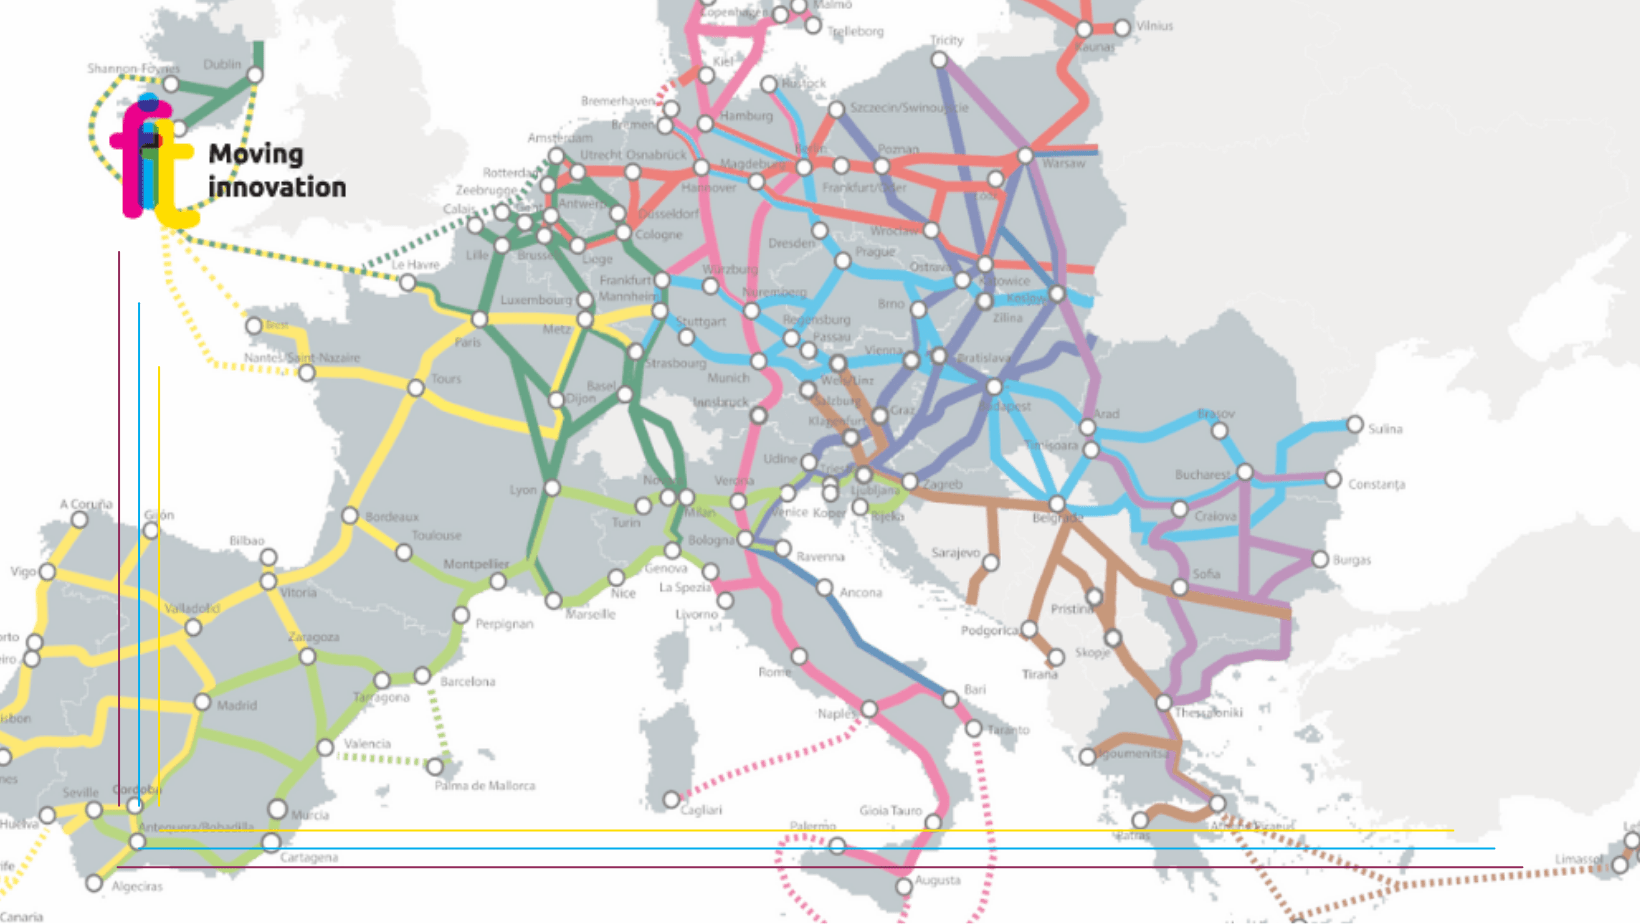 Rete transeuropea dei trasporti